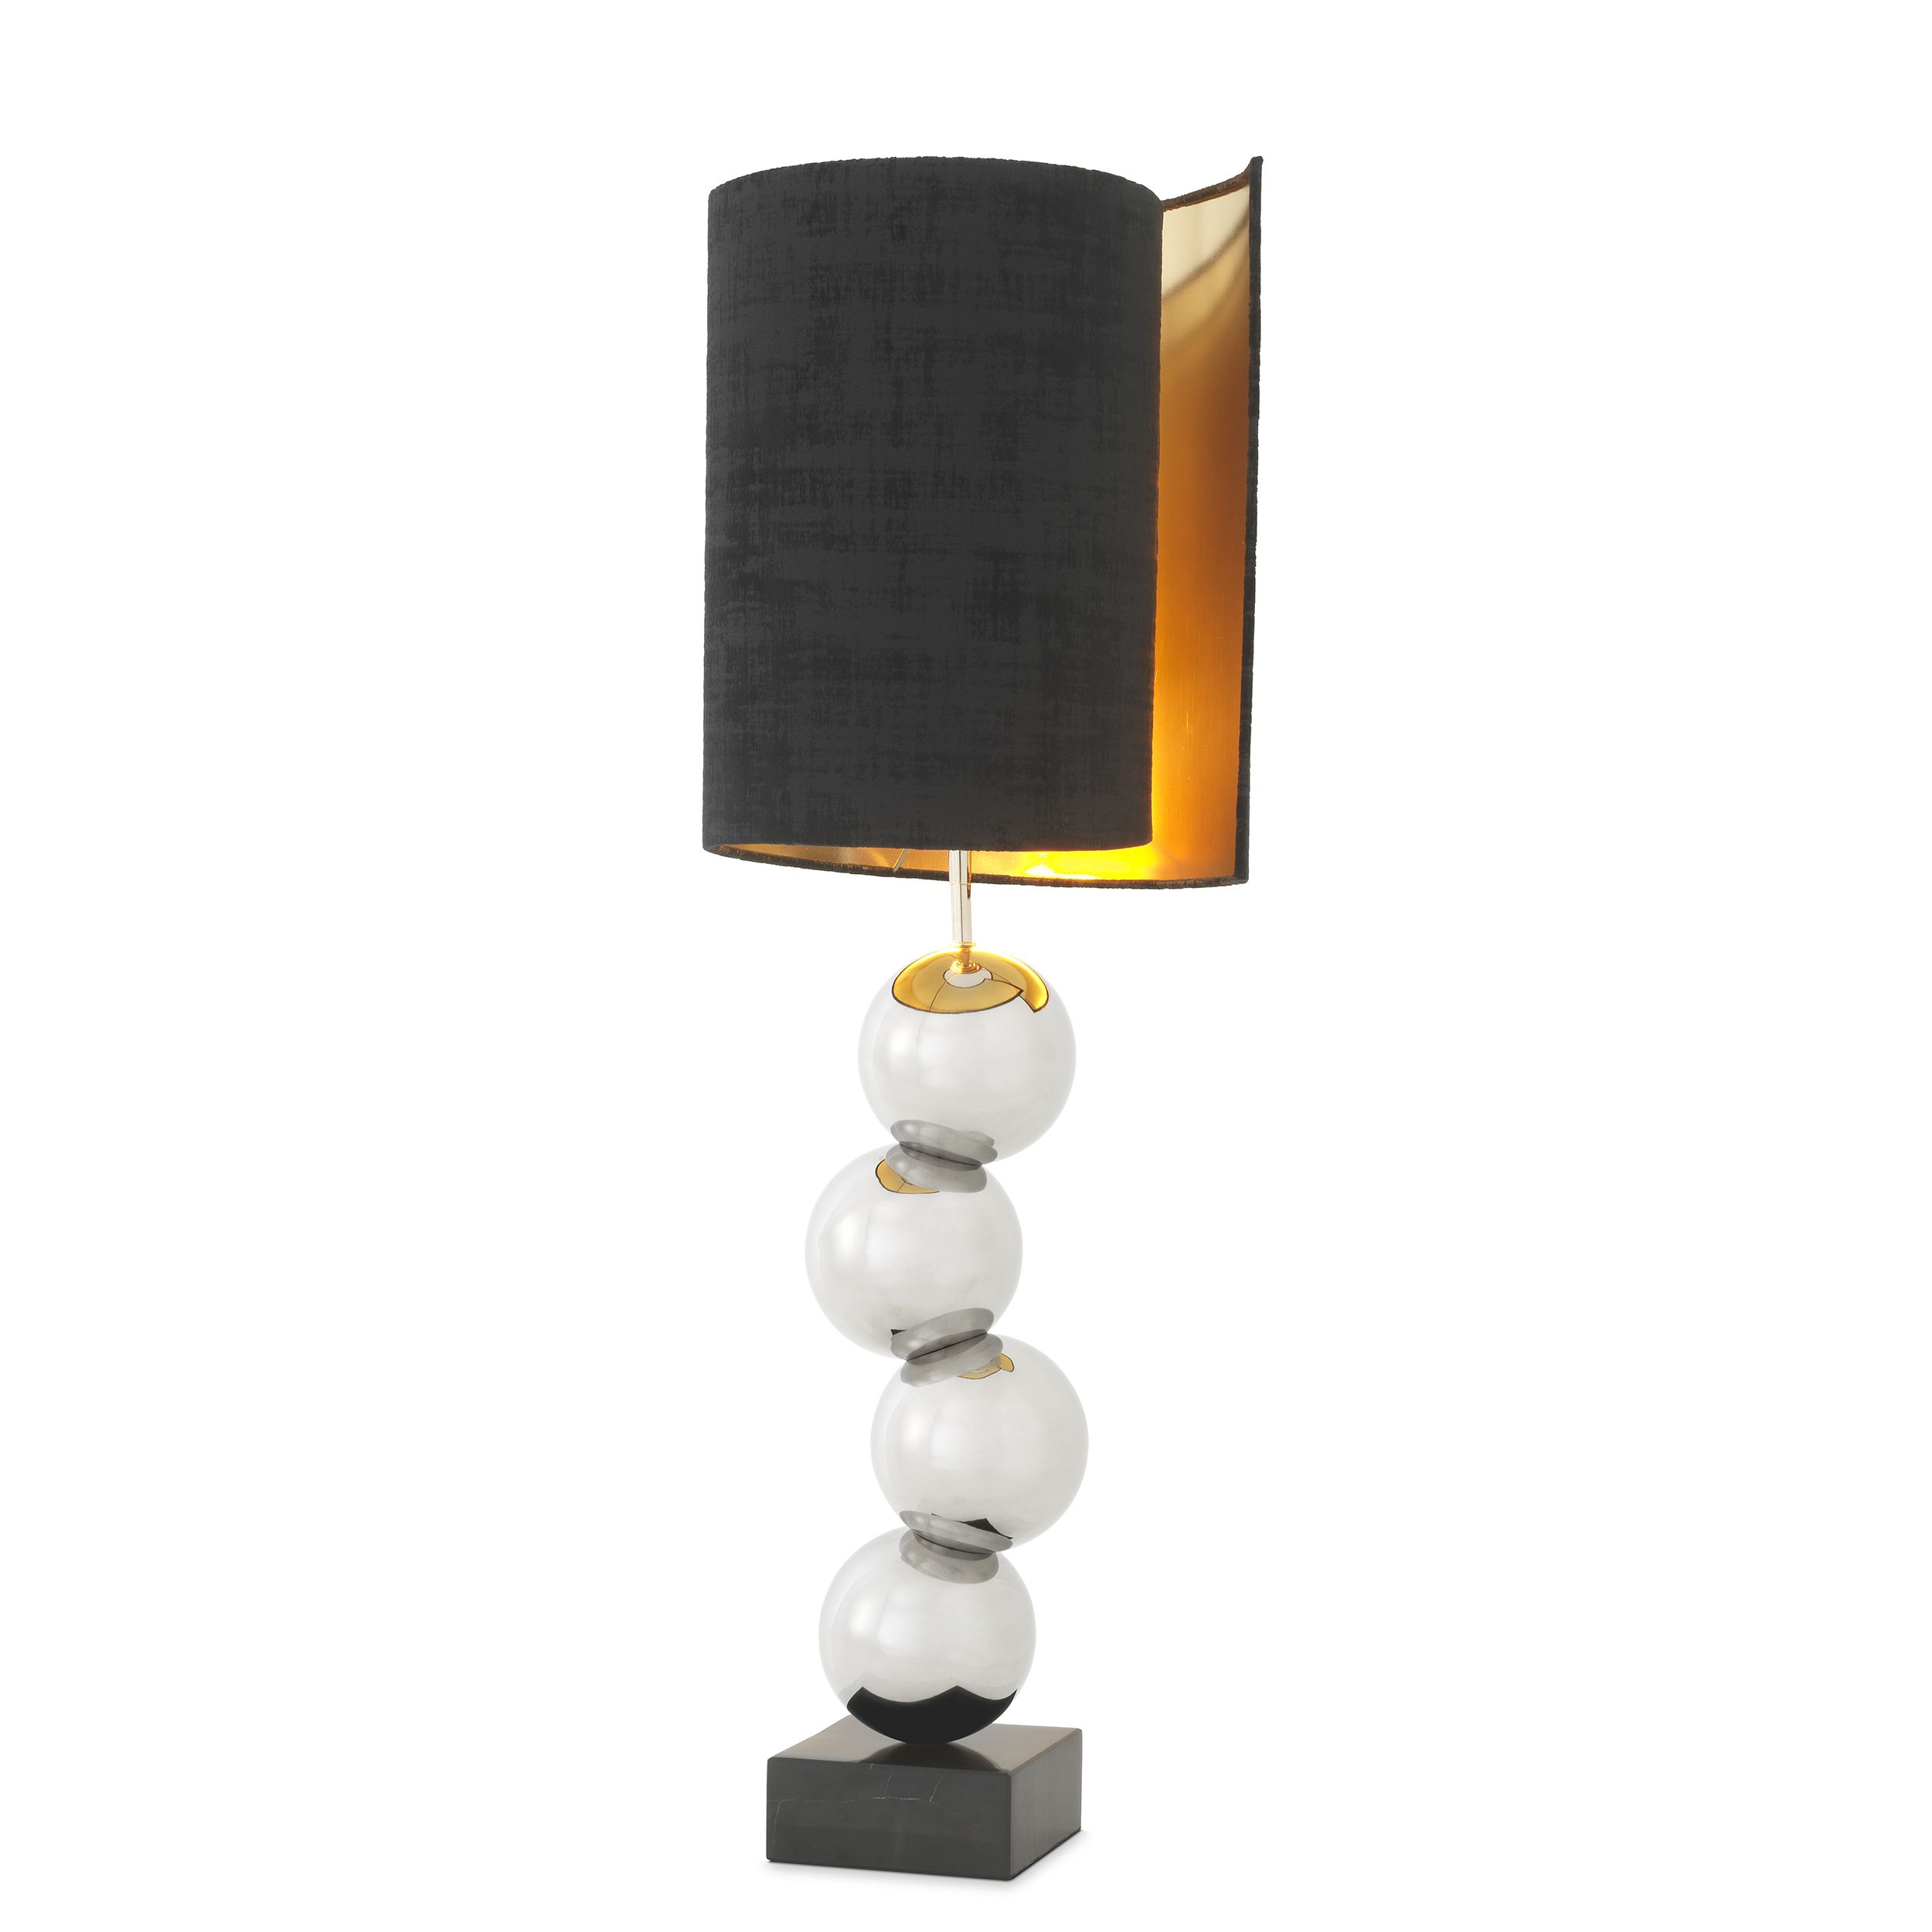 Köp Bordslampa Aerion Hos Stockton Se, Black Quartz Crystal Table Lamps